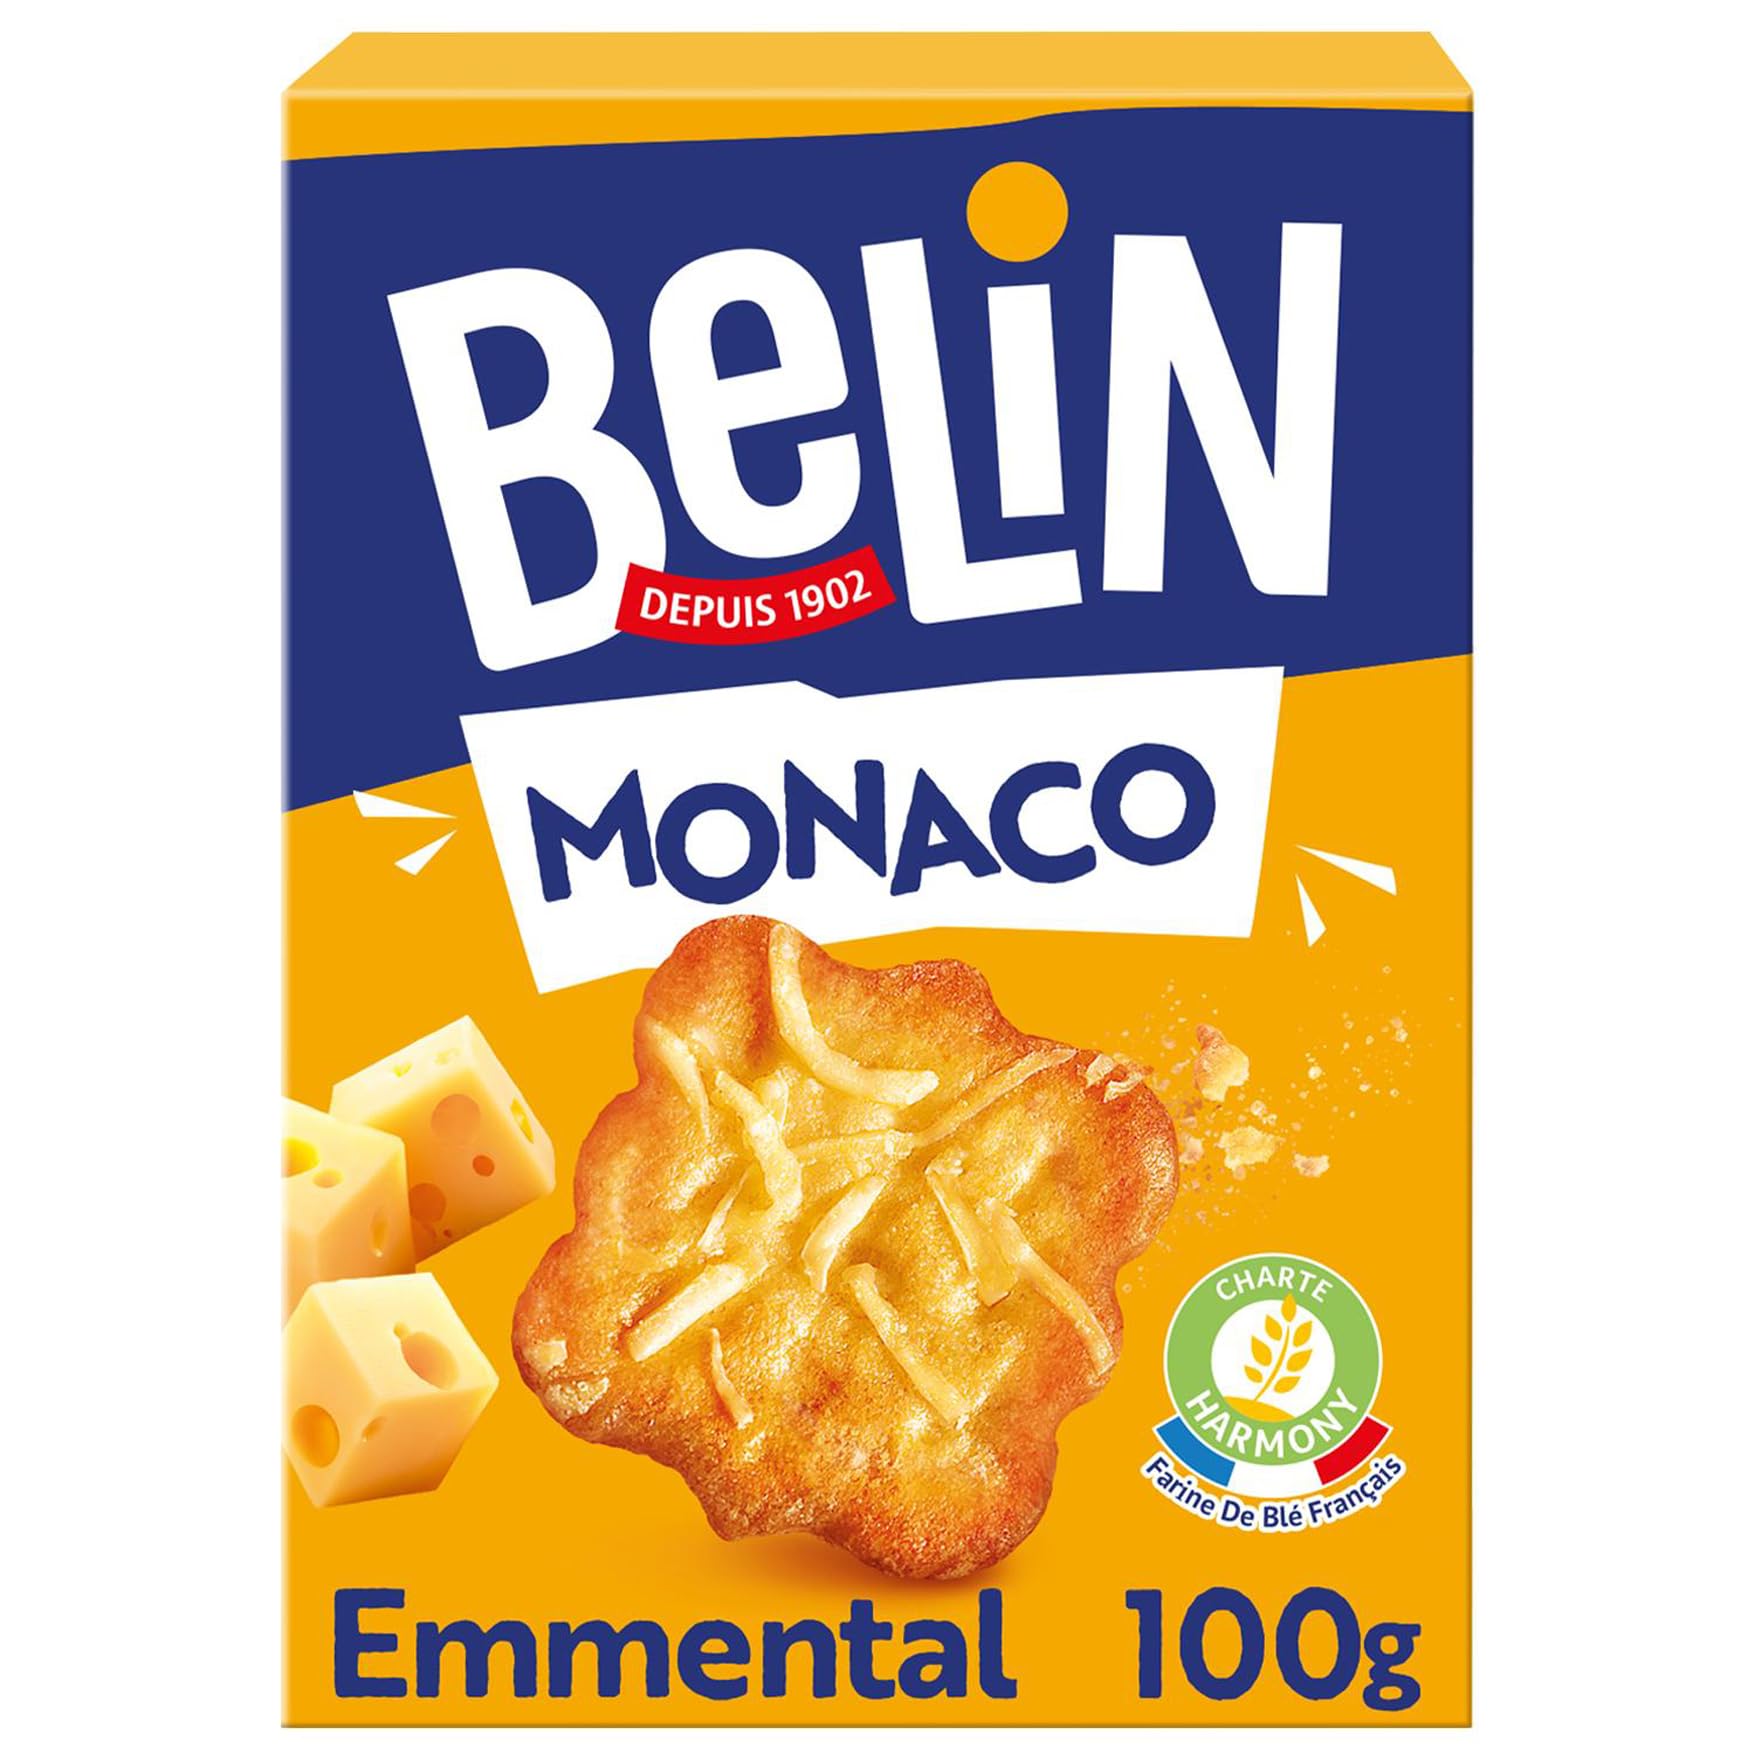 Achat Belin Monaco - Crackers Salés à l´Emmental - Idéal pour l´Apéro - 8 Boîtes x 100 g gwLPo8g4M Vente chaude